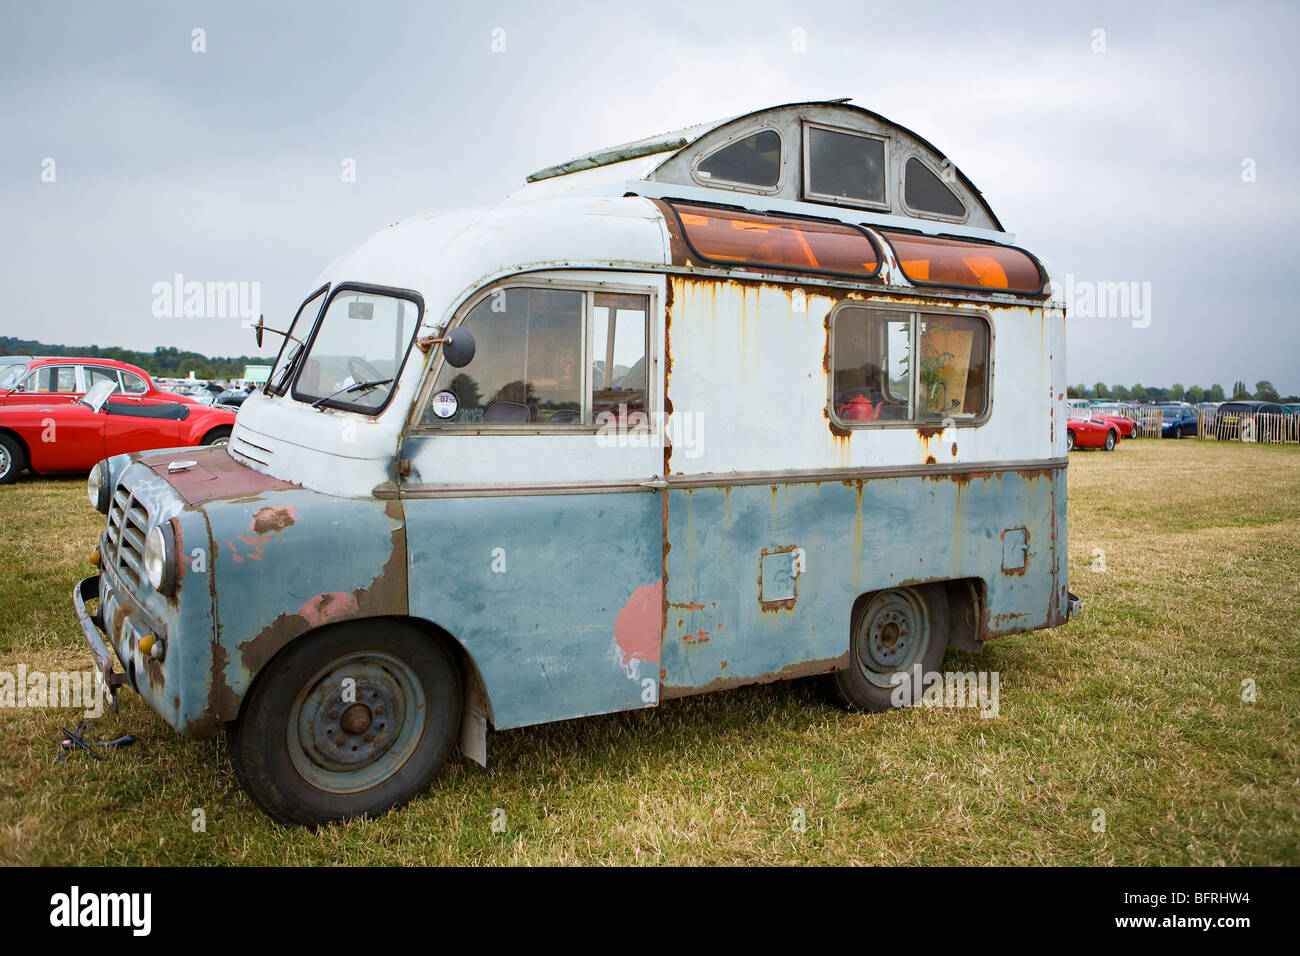 bedford camper van for sale